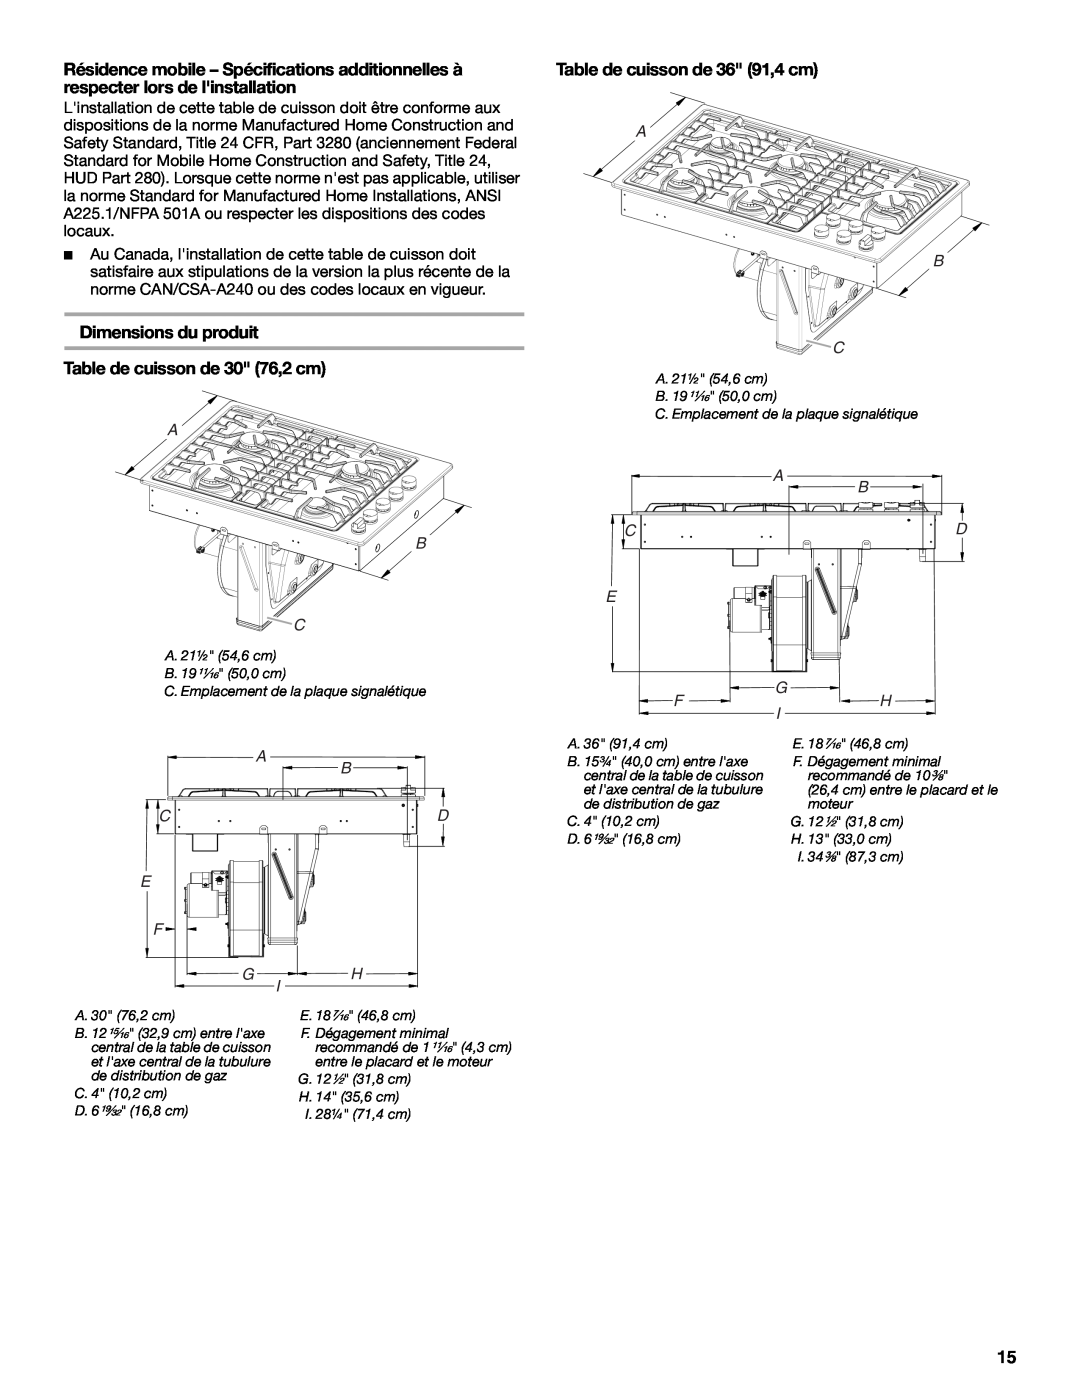 Jenn-Air W10574732A Dimensions du produit, Table de cuisson de 30 76,2 cm, Table de cuisson de 36 91,4 cm, A B C 